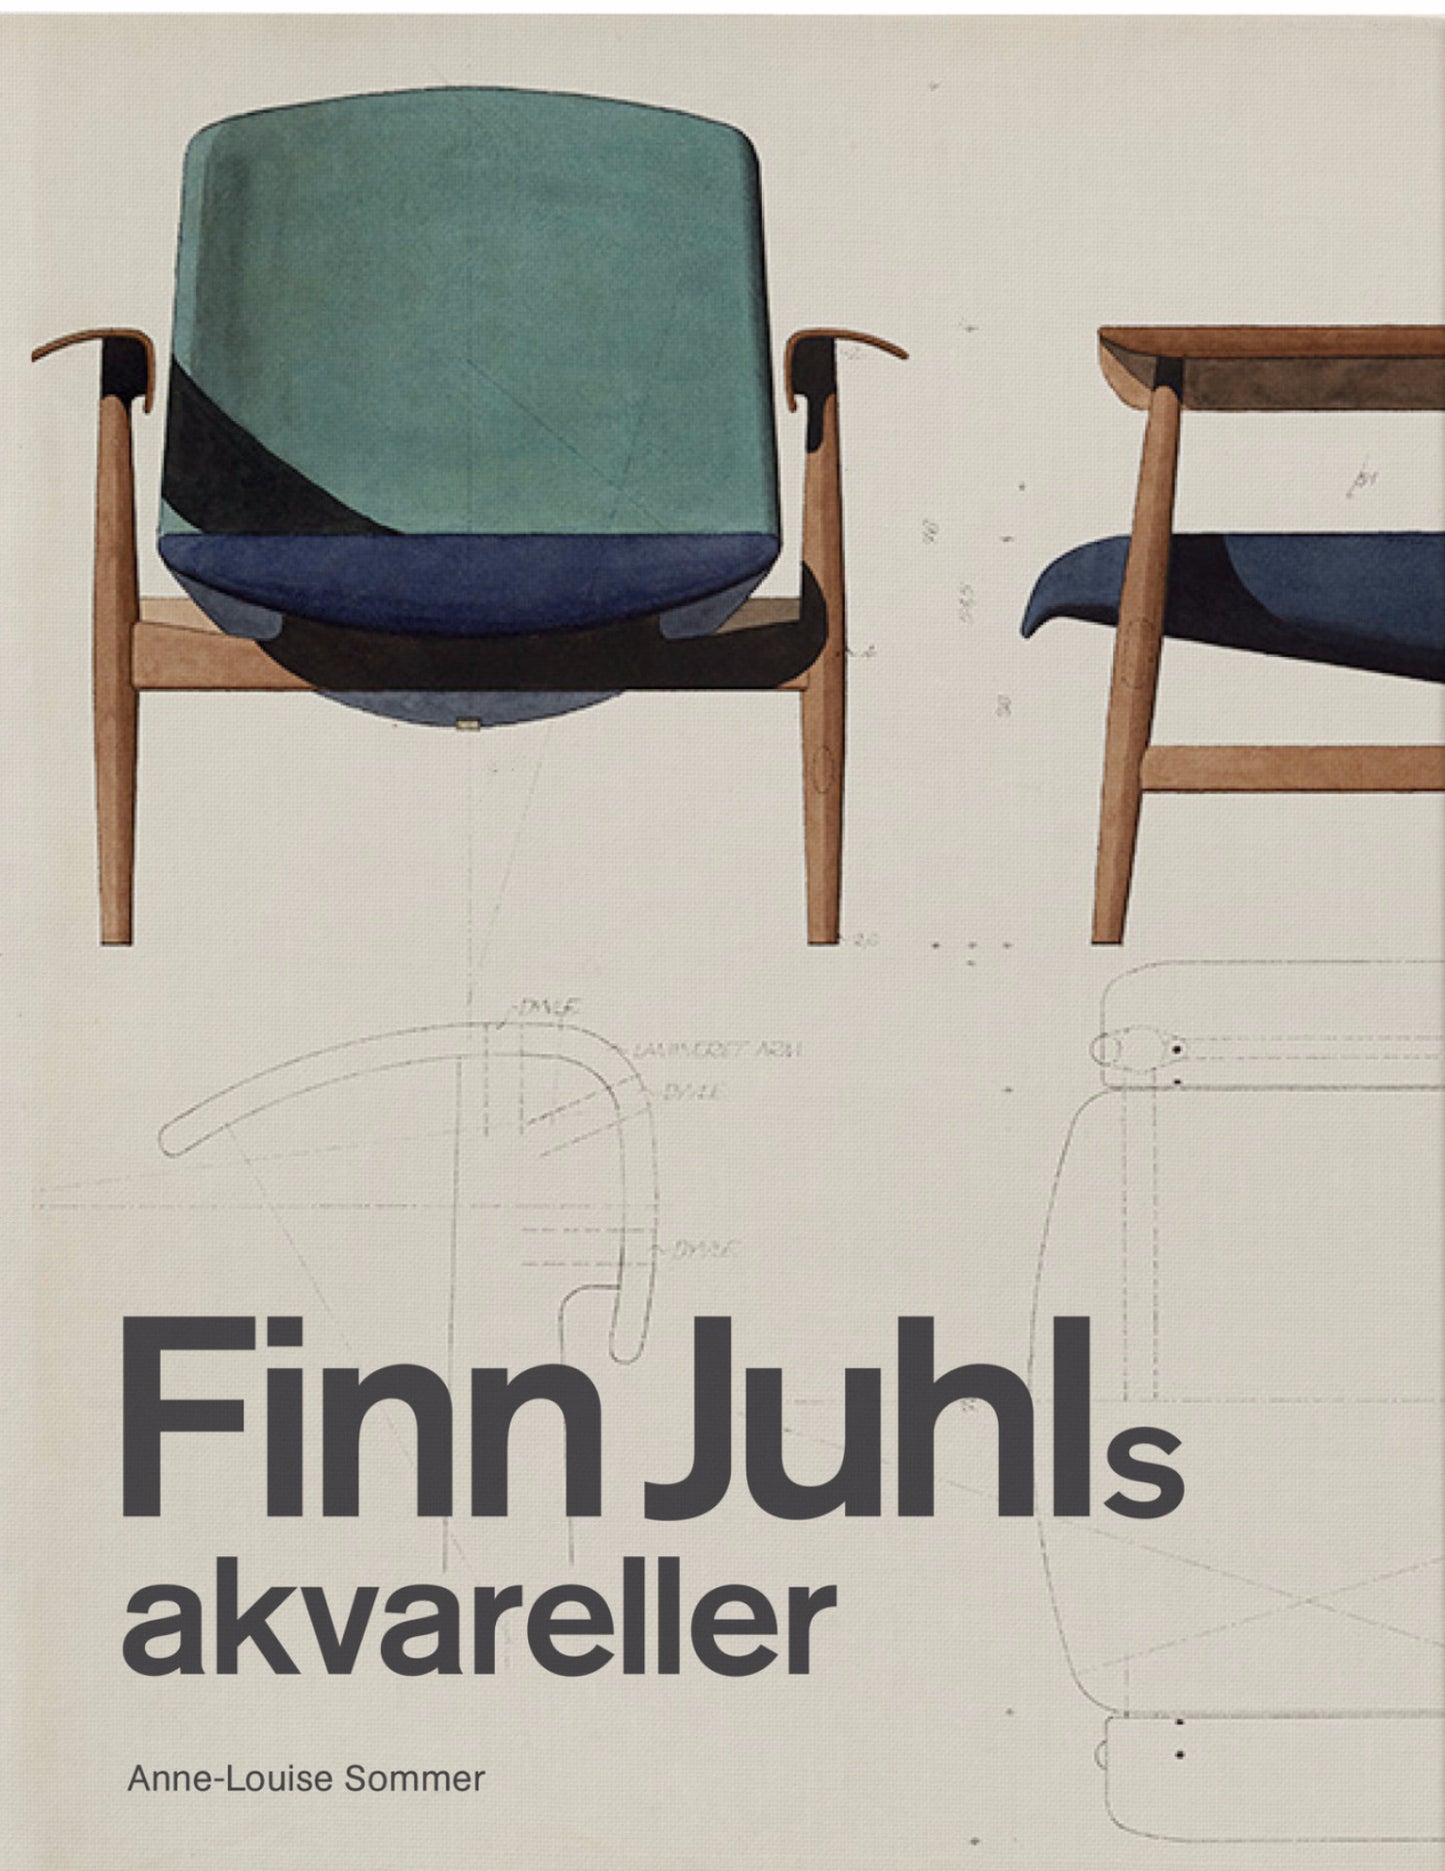 Finn Juhls akvareller